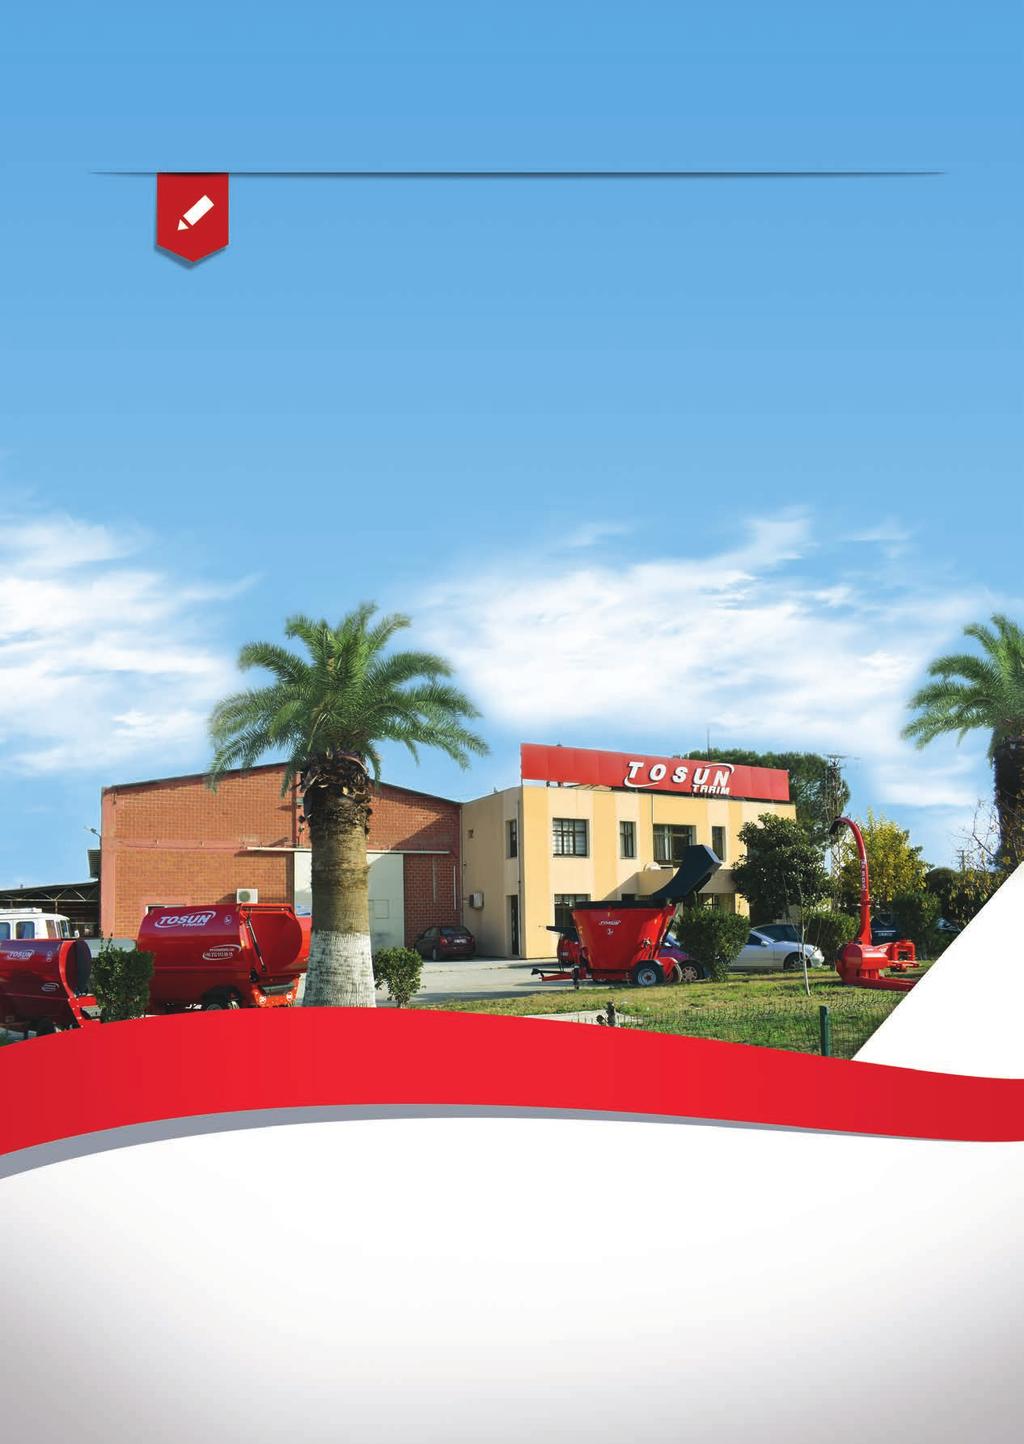 FİRMAMIZ Ege Tire Makina İmalat Ltd. Şti. olarak, üretmiş olduğumuz ürün ve hizmetleri siz değerli müşterilerimize sunmaktan büyük onur duymaktayız.